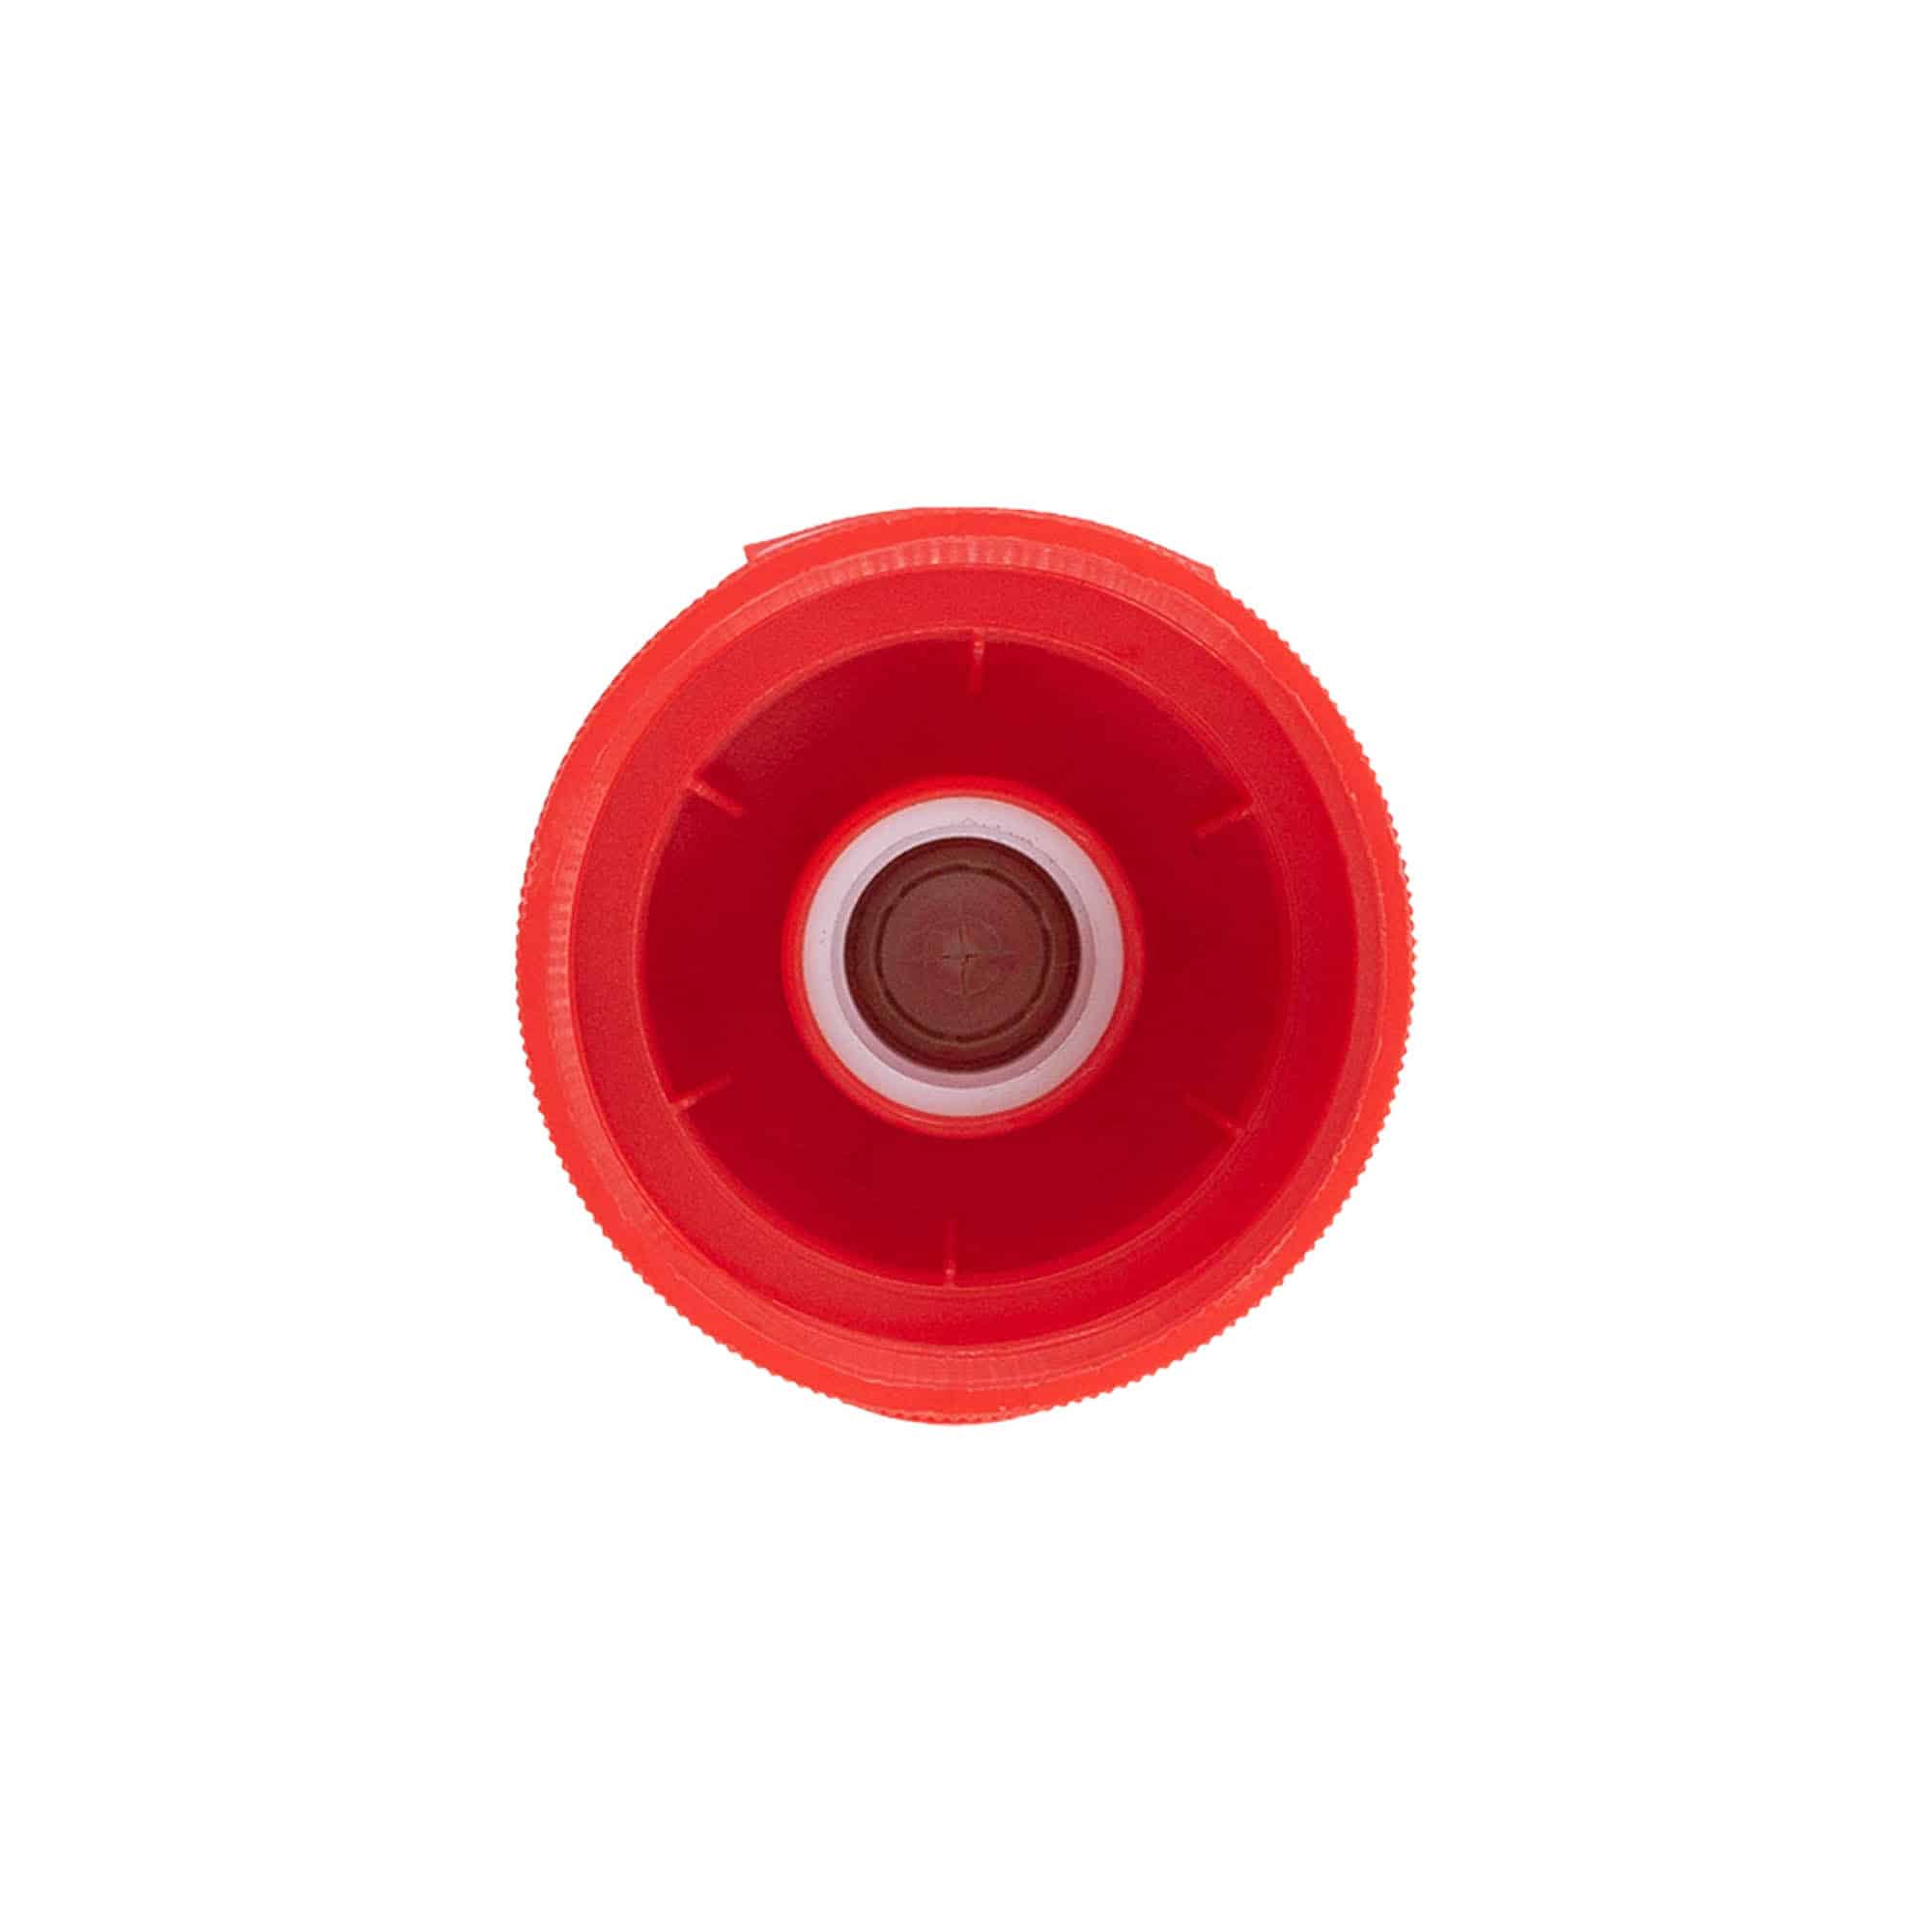 Schraubverschluss Klappscharnier, PP-Kunststoff, rot, für Mündung: GPI 38/400